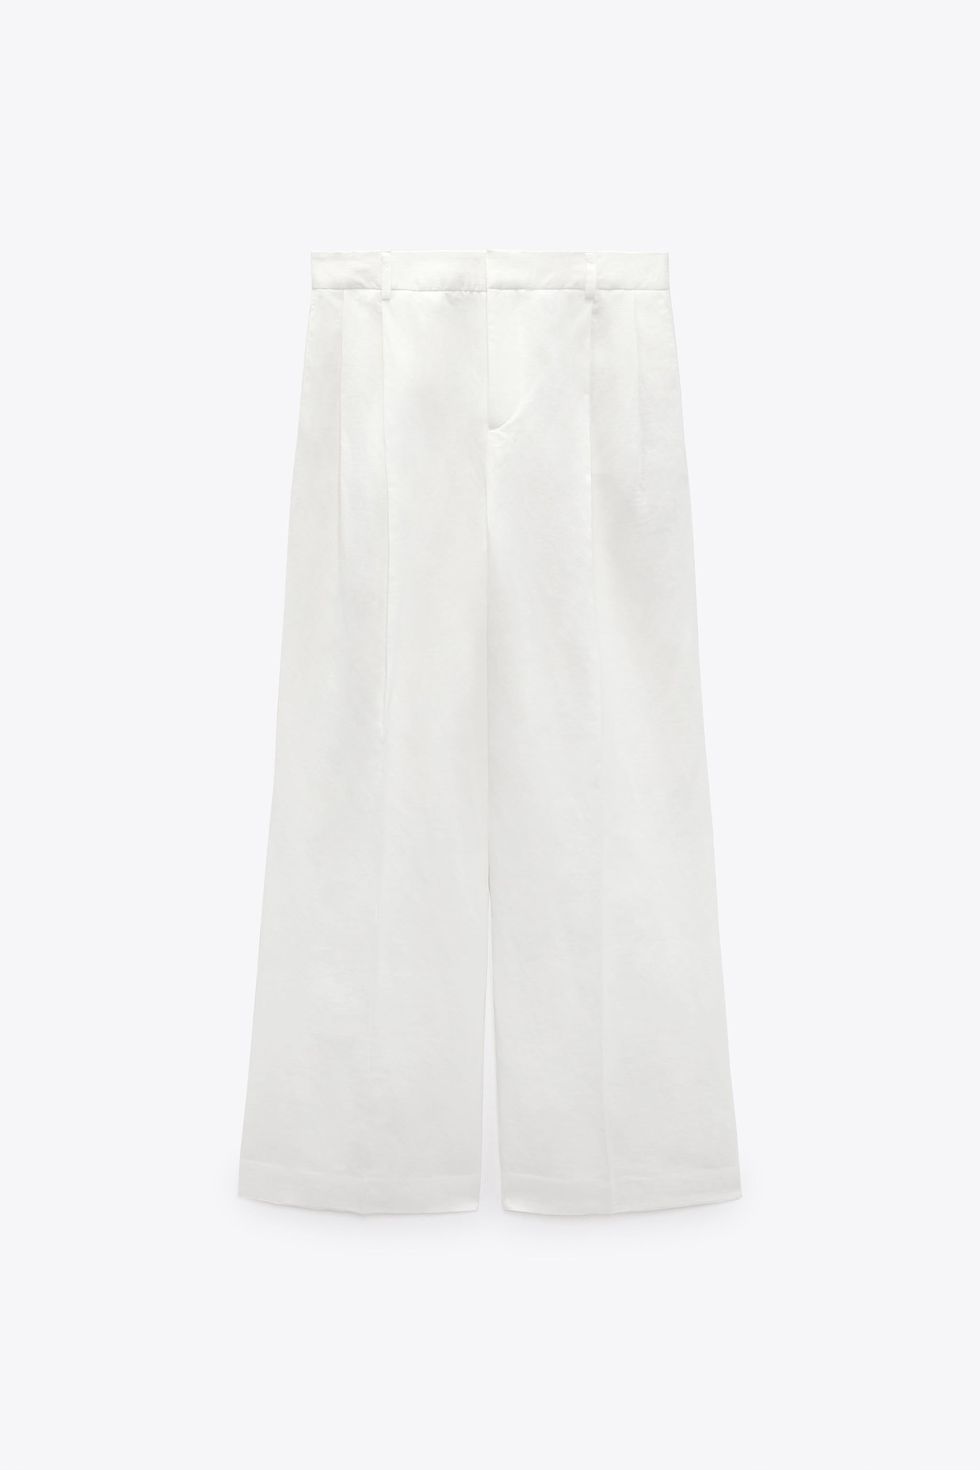 Los pantalones blancos de lino de Zara que las influencers +50